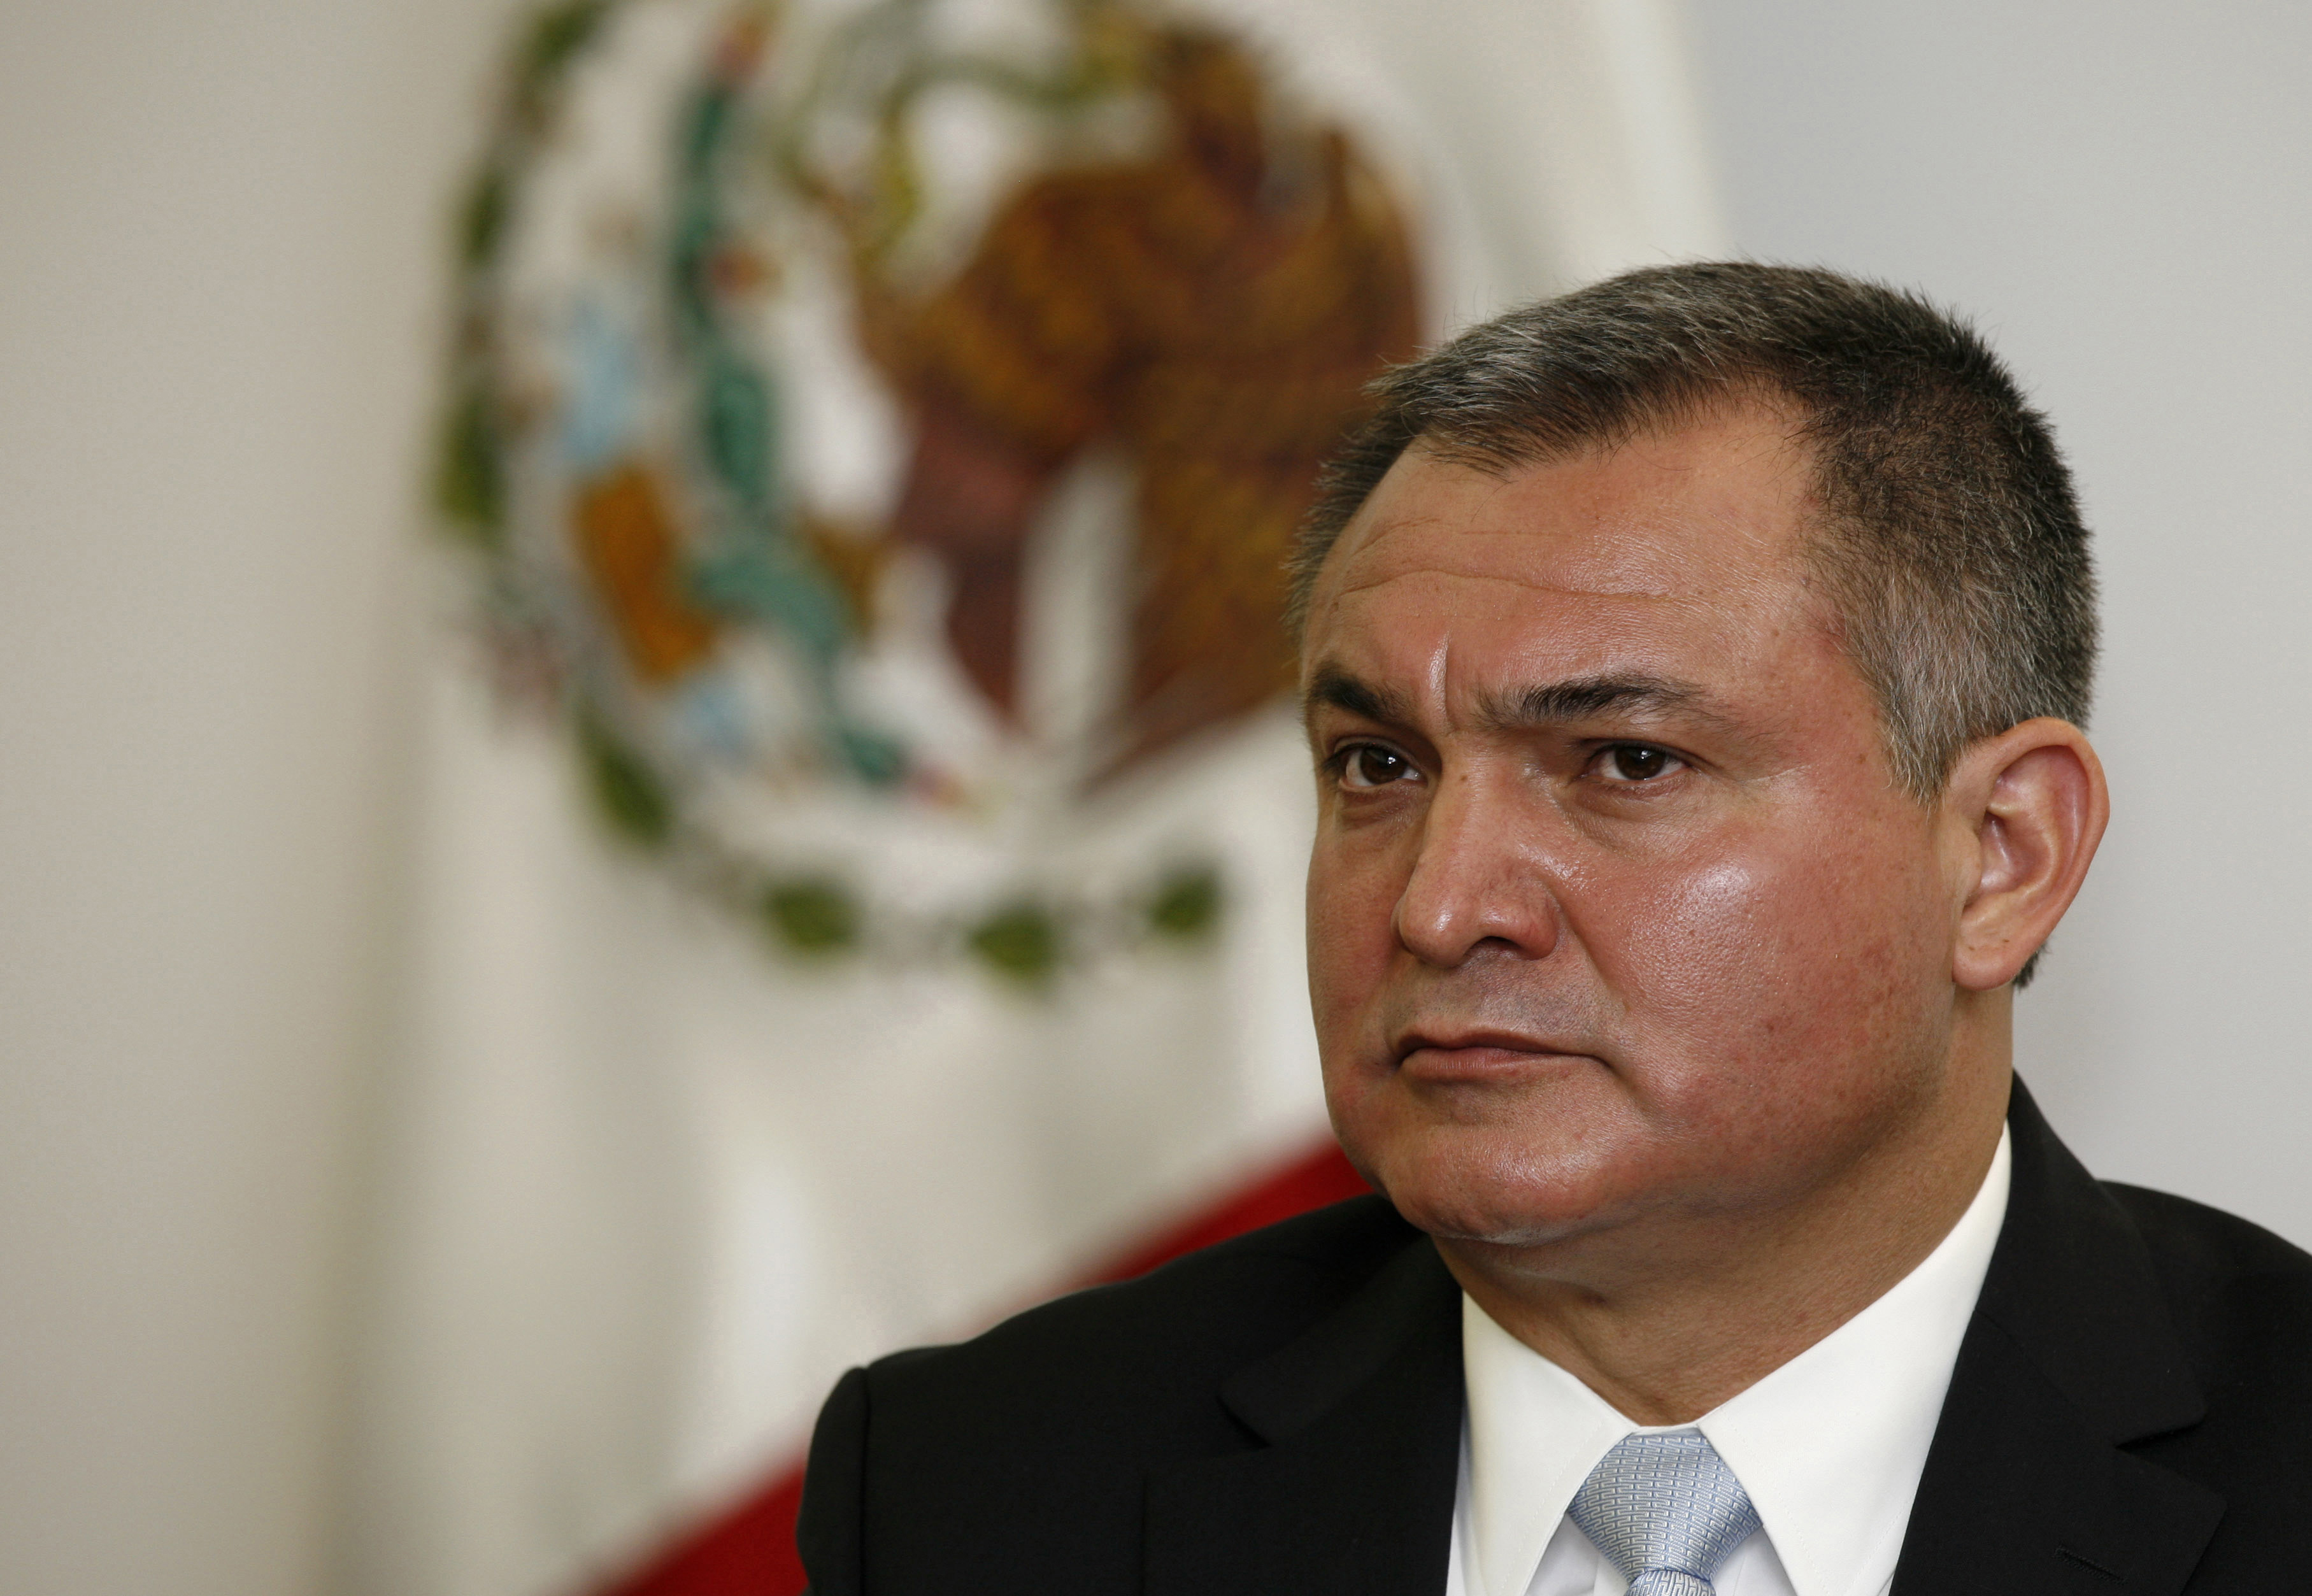 El exsecretario de Seguridad Pública de México Genaro García Luna (AP Foto/Marco Ugarte, archivo)